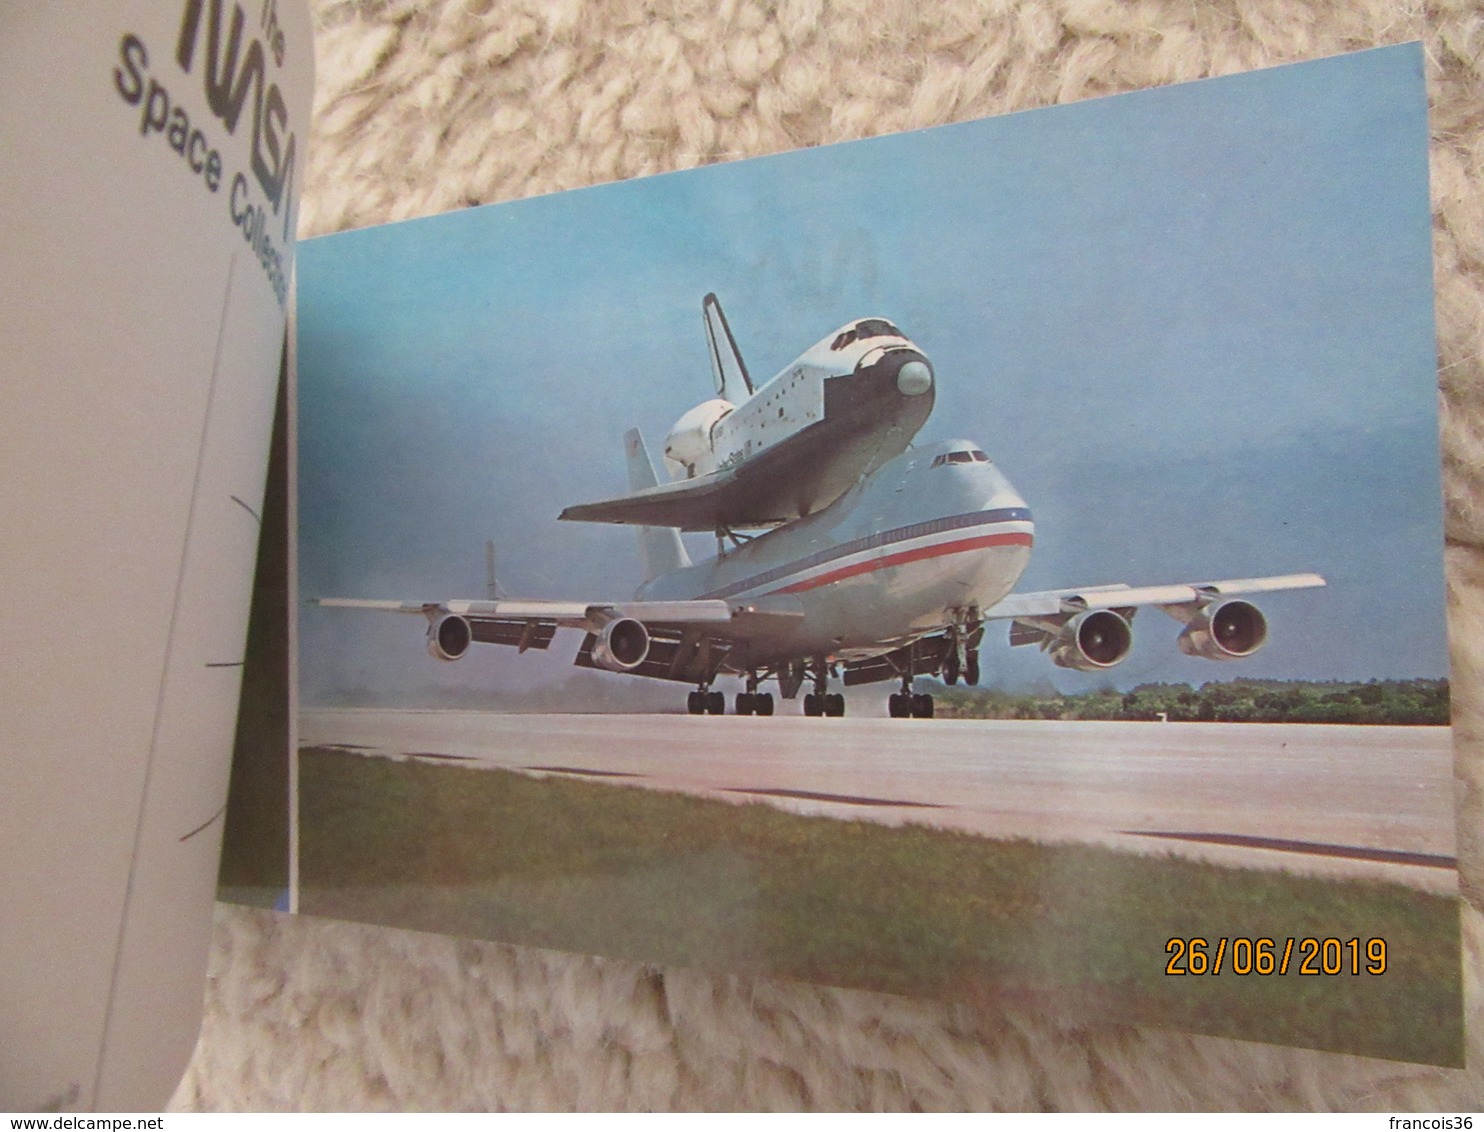 Carnet de 20 cartes de NASA in space - Historic events - astronautes & fusée - Astronauts & rocket  Conquête de l'espace